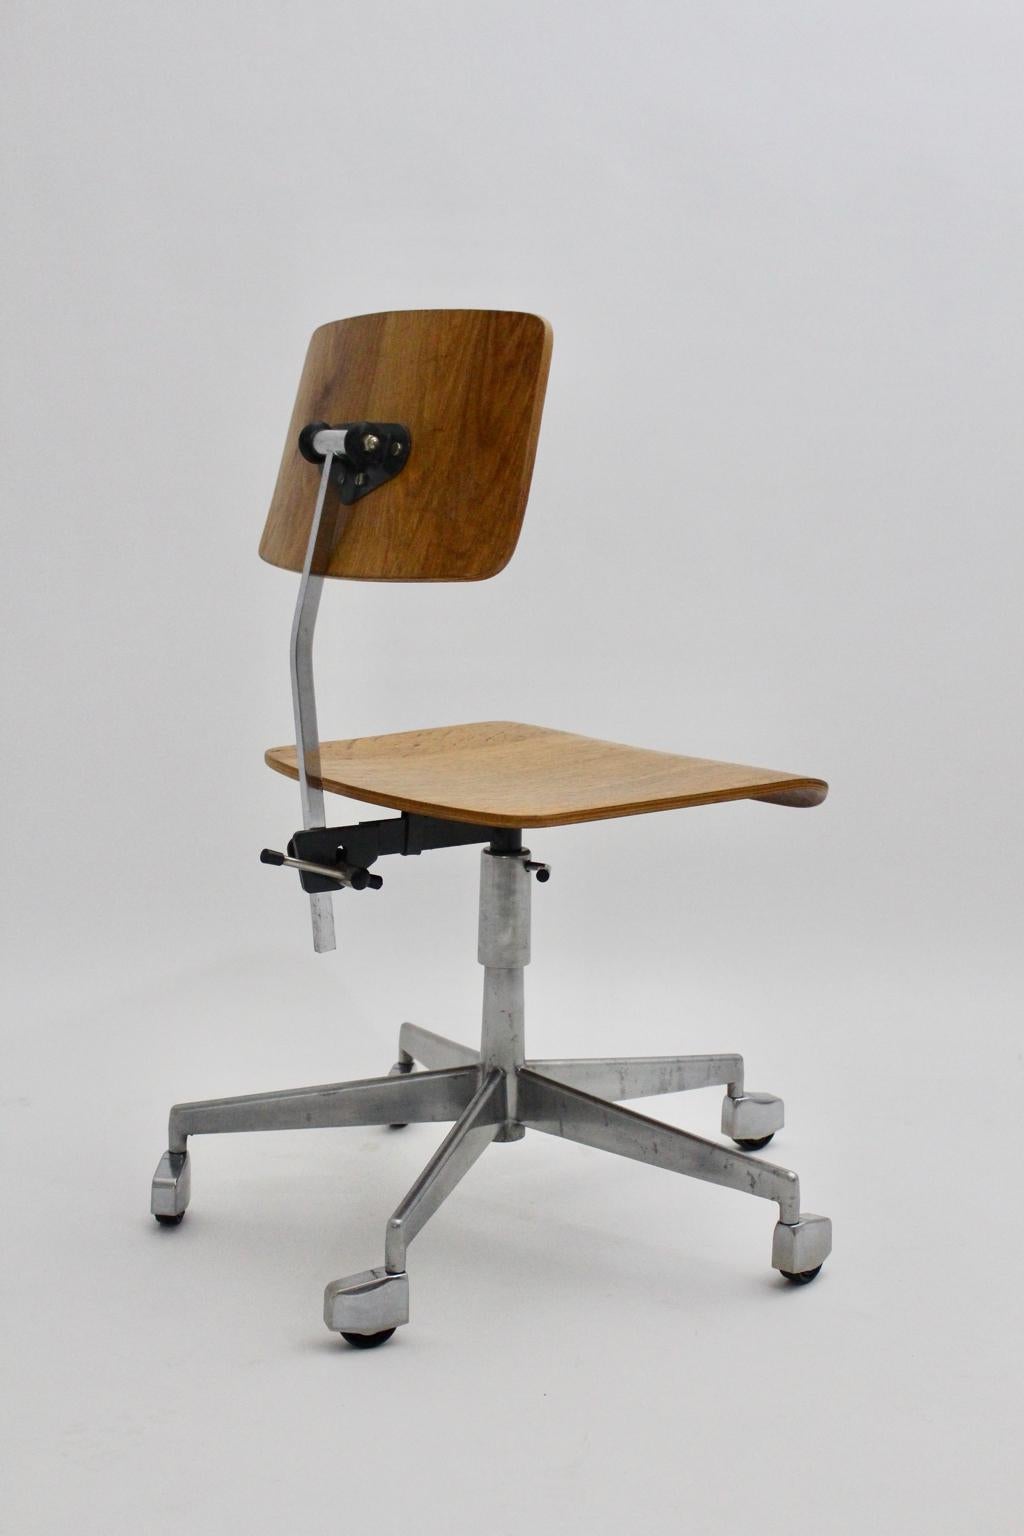 20th Century Mid-Century Modern Desk Chair by Jorgen Rasmussen Metal Oak Denmark, circa 1950